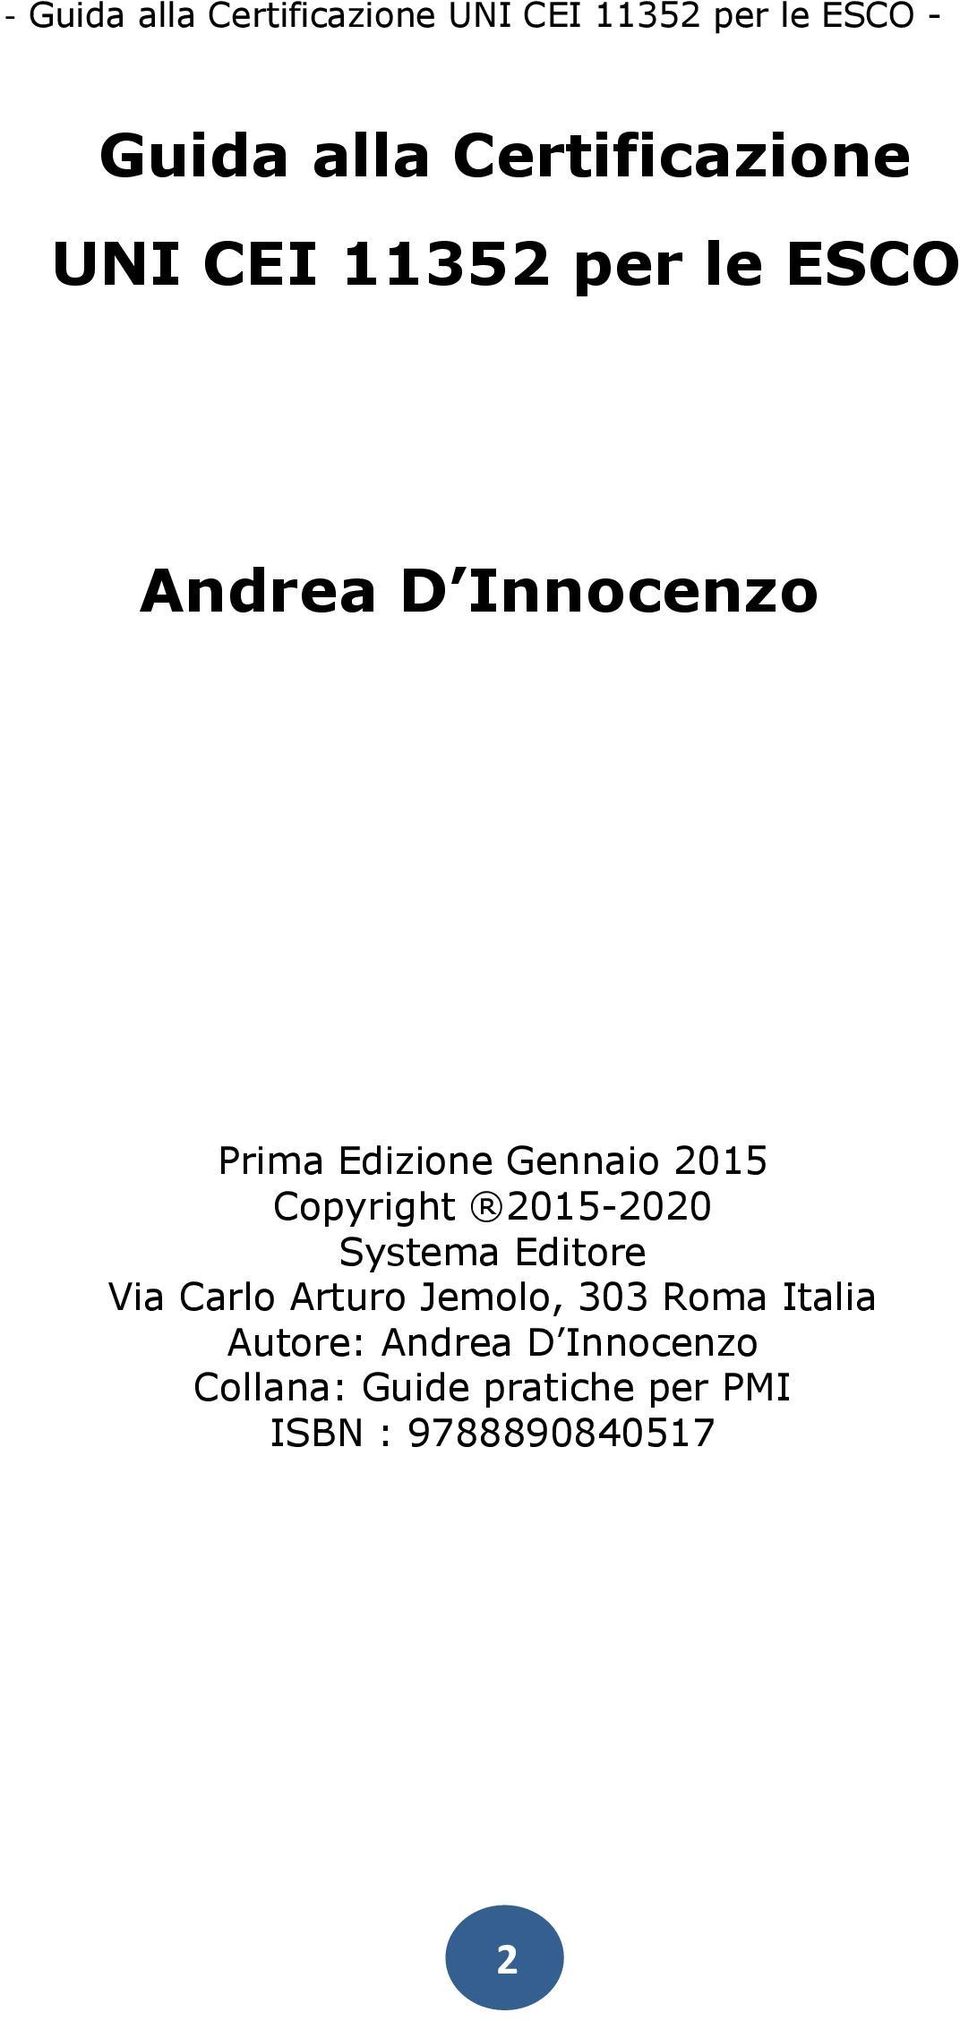 Systema Editore Via Carlo Arturo Jemolo, 303 Roma Italia Autore: